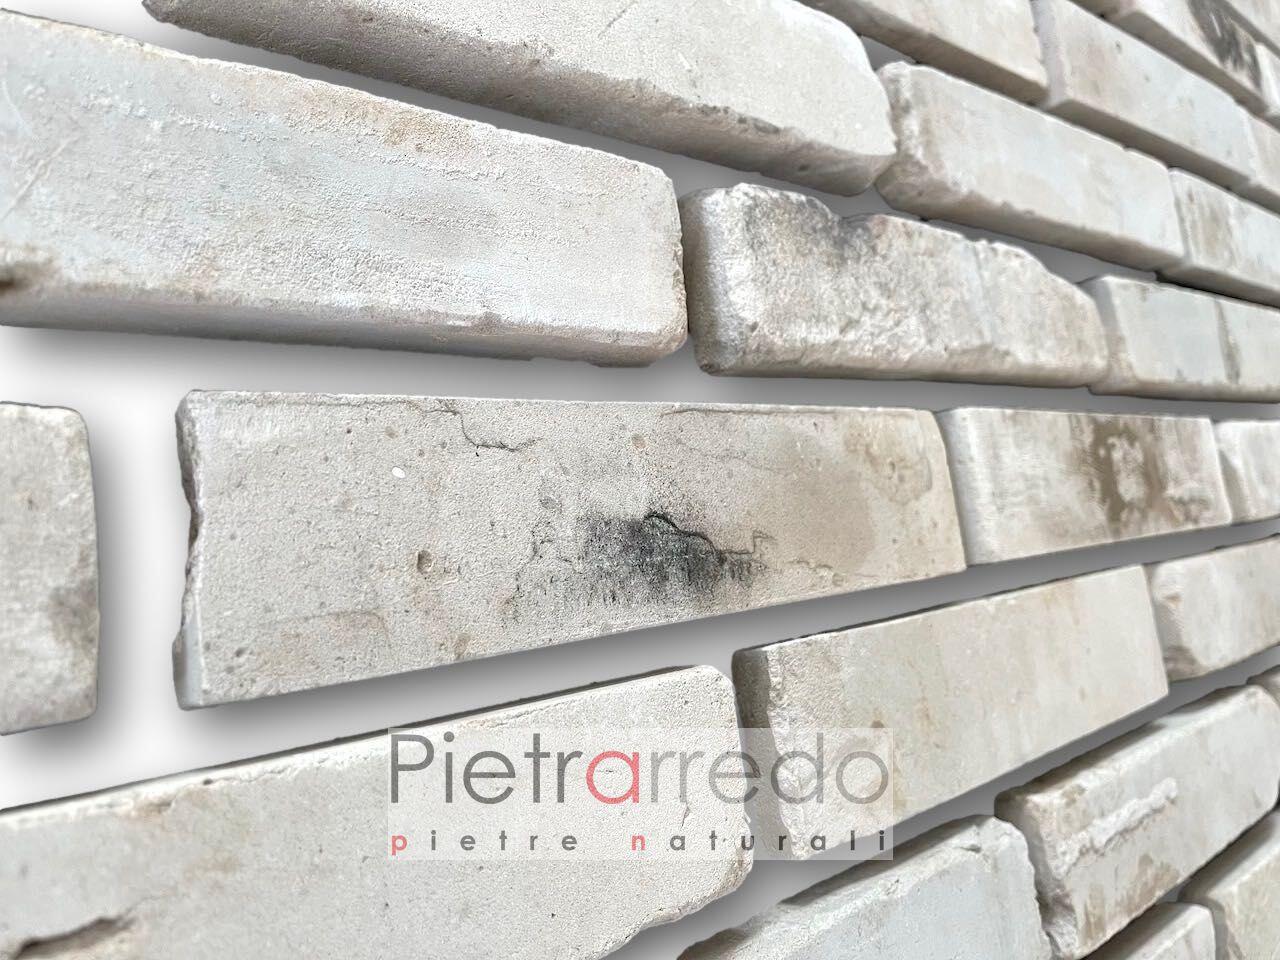 prezzo parete e facciata con mattone bianco anticato pietrarredo